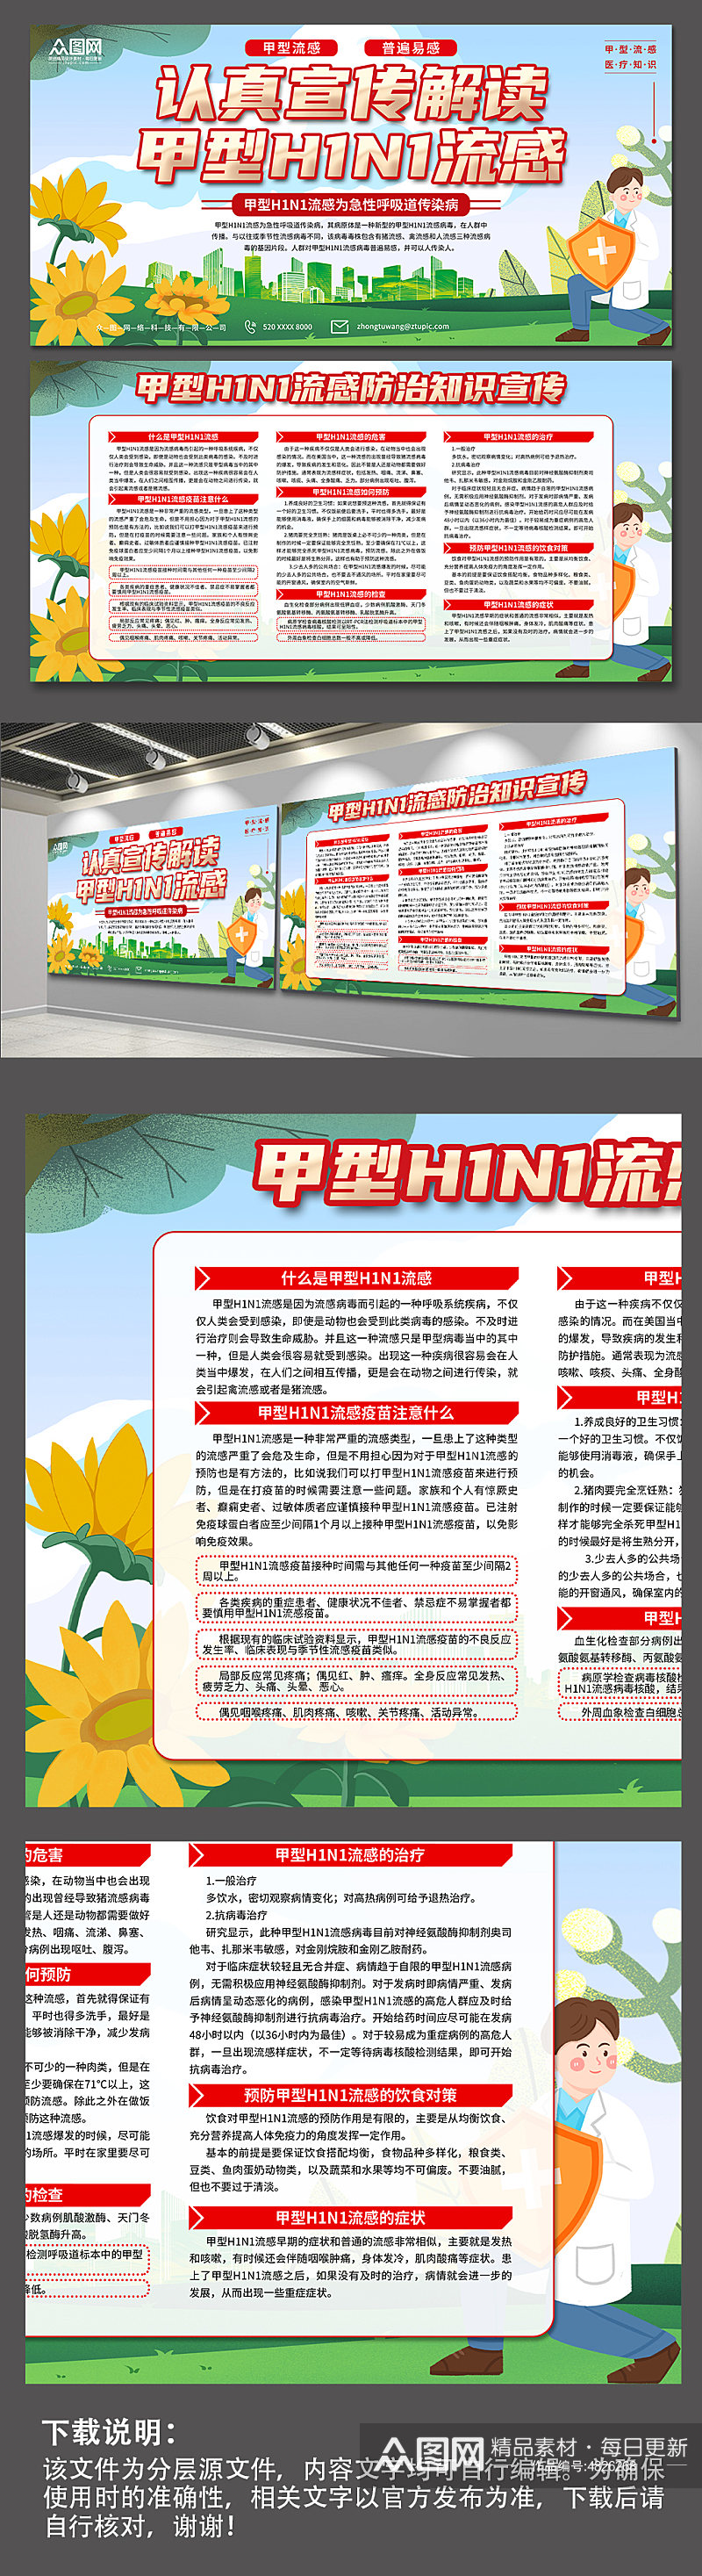 甲流科学预防甲型H1N1流感防治知识展板素材